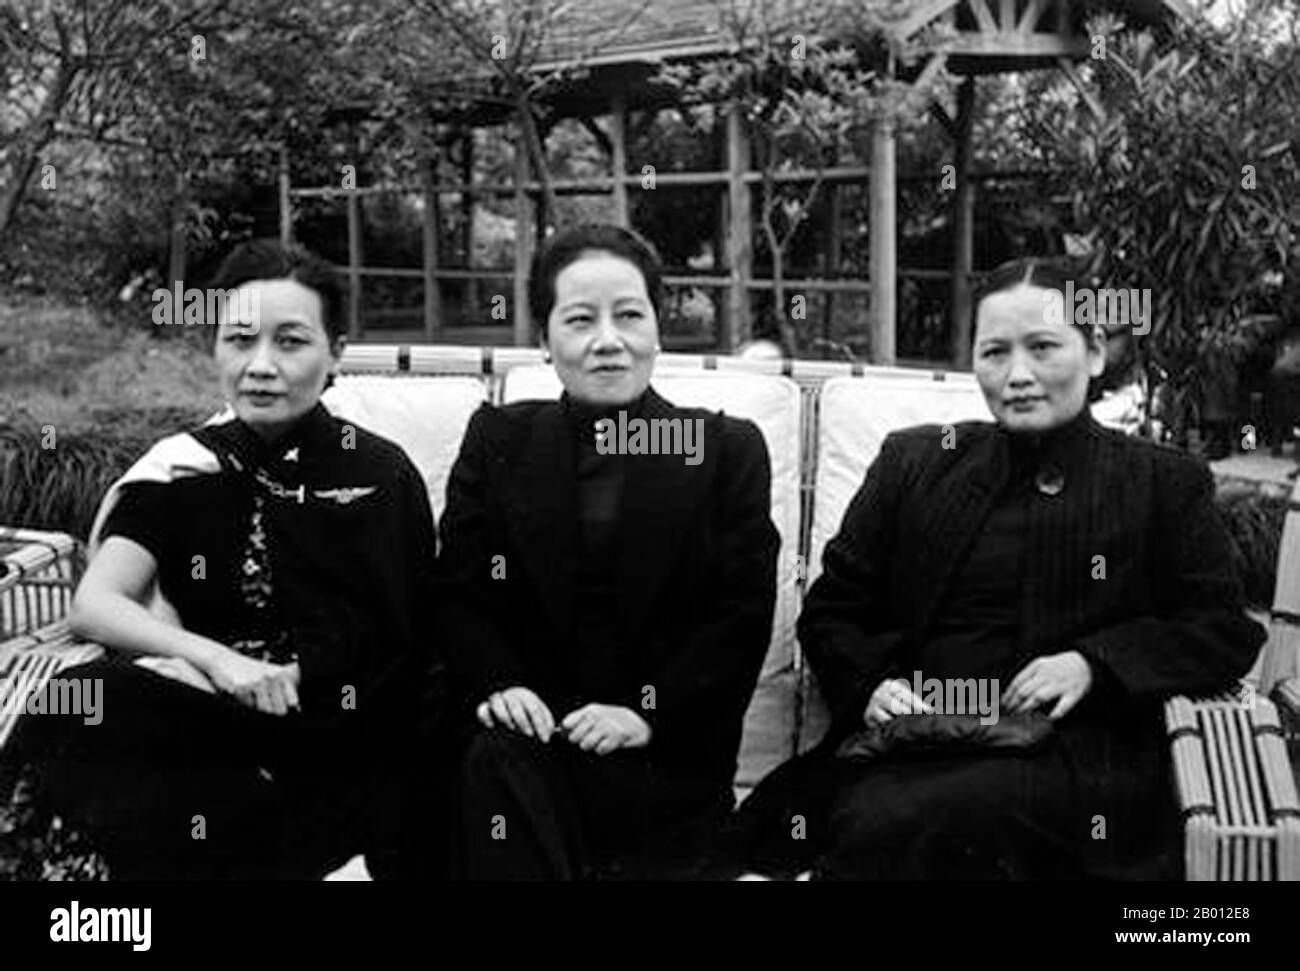 Cina: Le Suore Soong, Meiling, Mailing e Qingling Soong, Chongqing, 1942. Le Suore Soong (Songjia Jiemei, o 'Suore della Casa Song') erano tre donne cinesi Hakka che erano, insieme ai loro mariti, tra le figure politiche più significative della Cina del XX secolo. Ognuno di loro ha giocato un ruolo importante nell'influenzare i propri mariti, che, insieme alle proprie posizioni di potere, alla fine ha cambiato il corso della storia cinese. Foto Stock